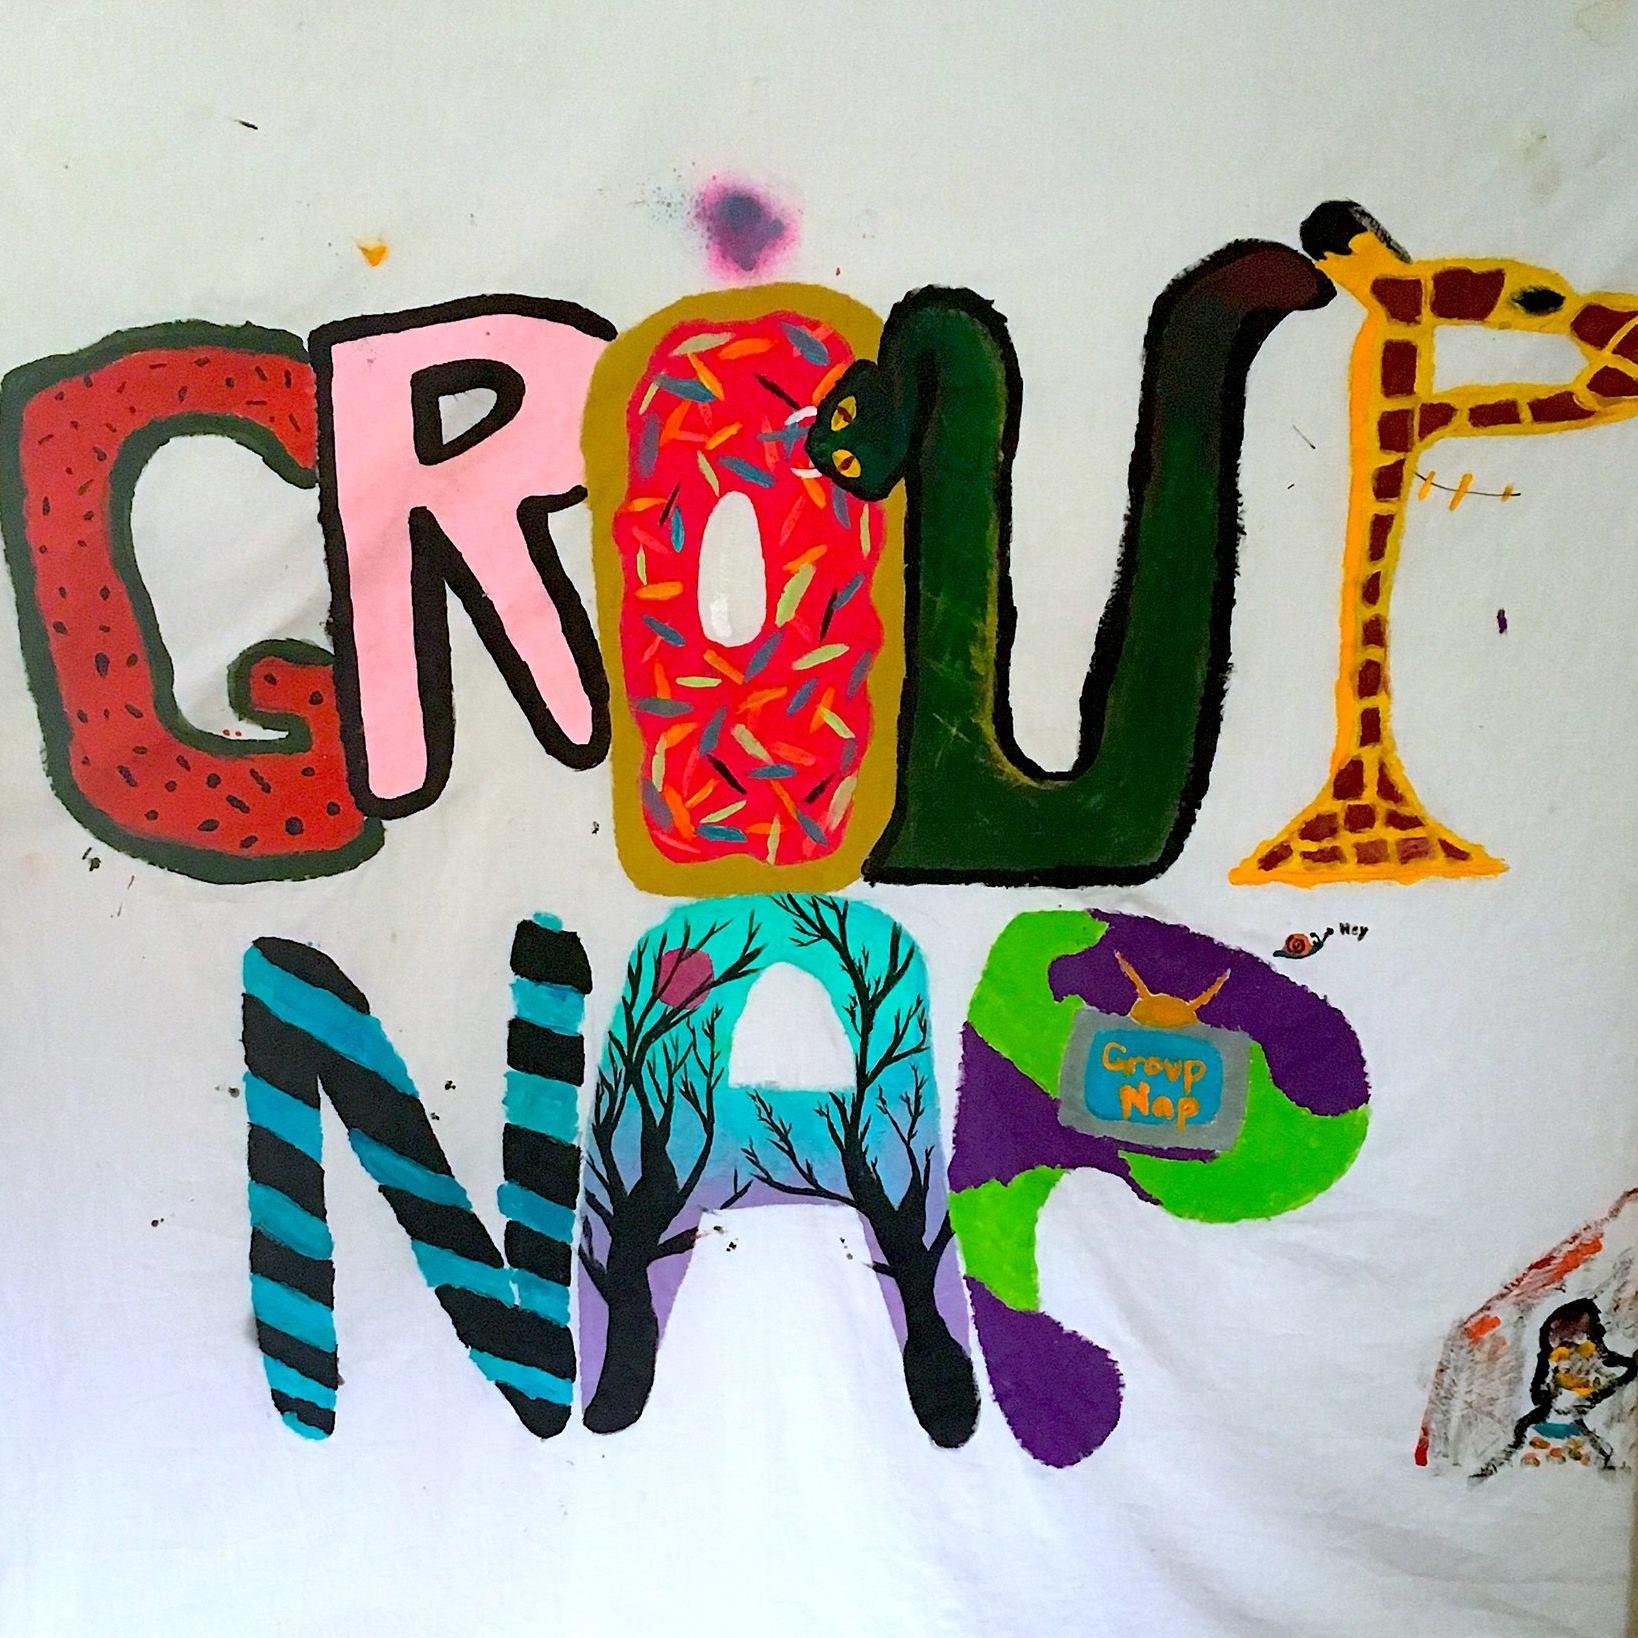 Group Nap